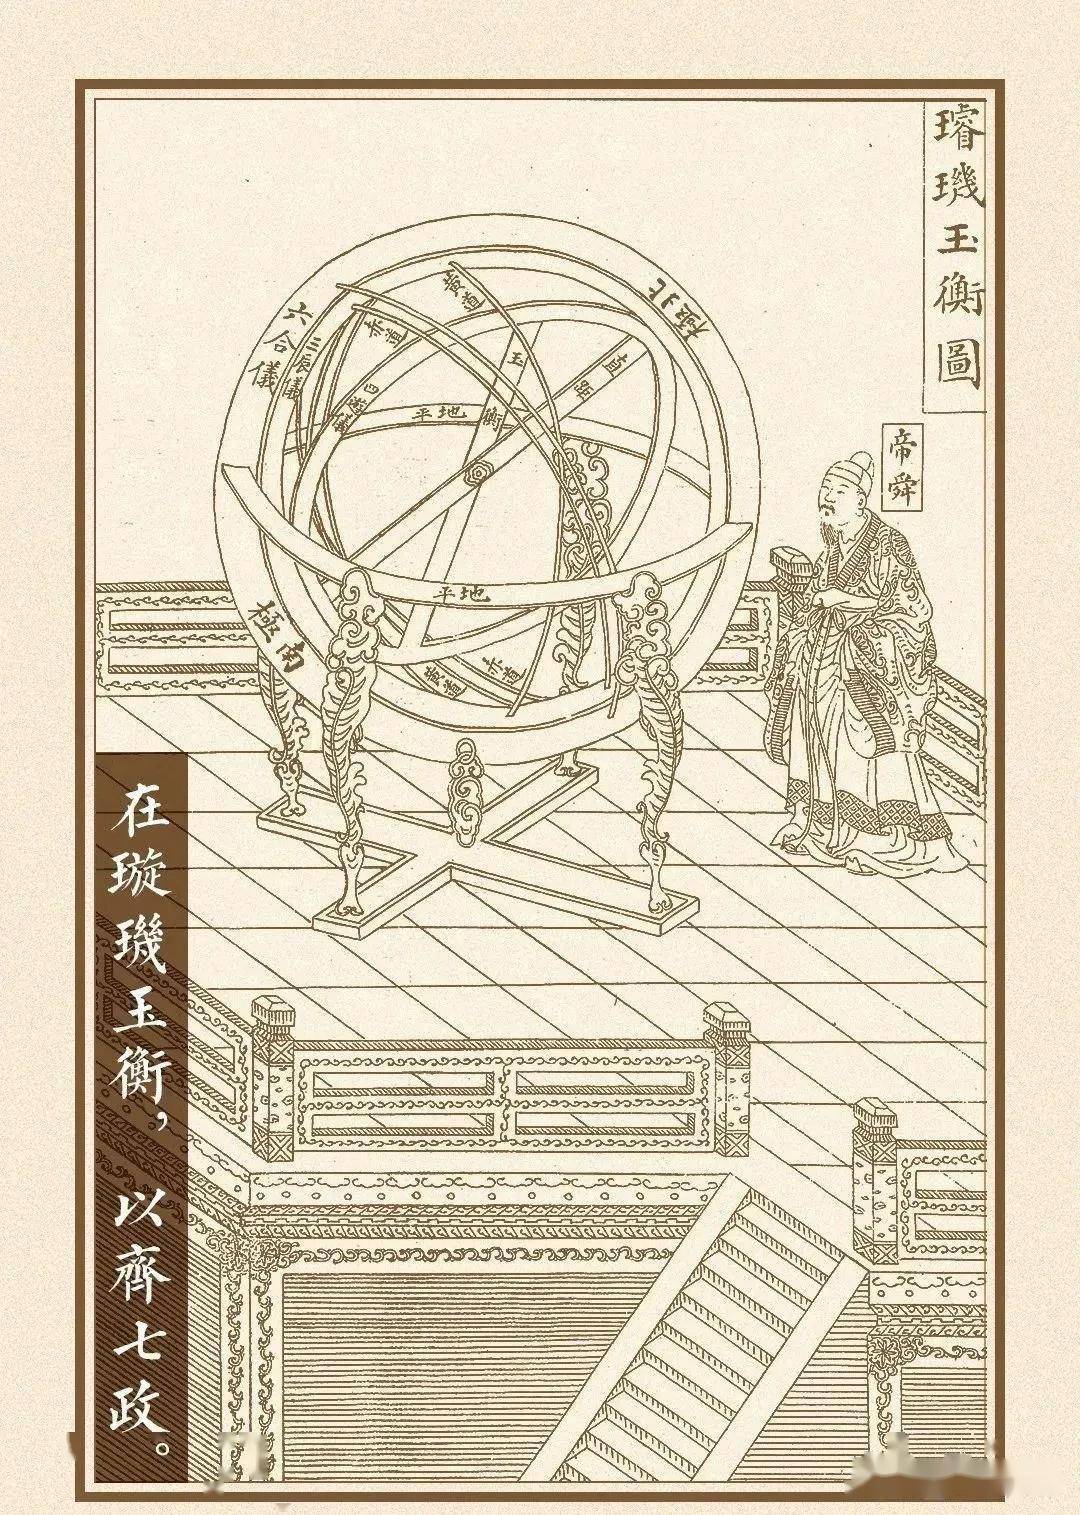 中国古代的天文和历法(下)